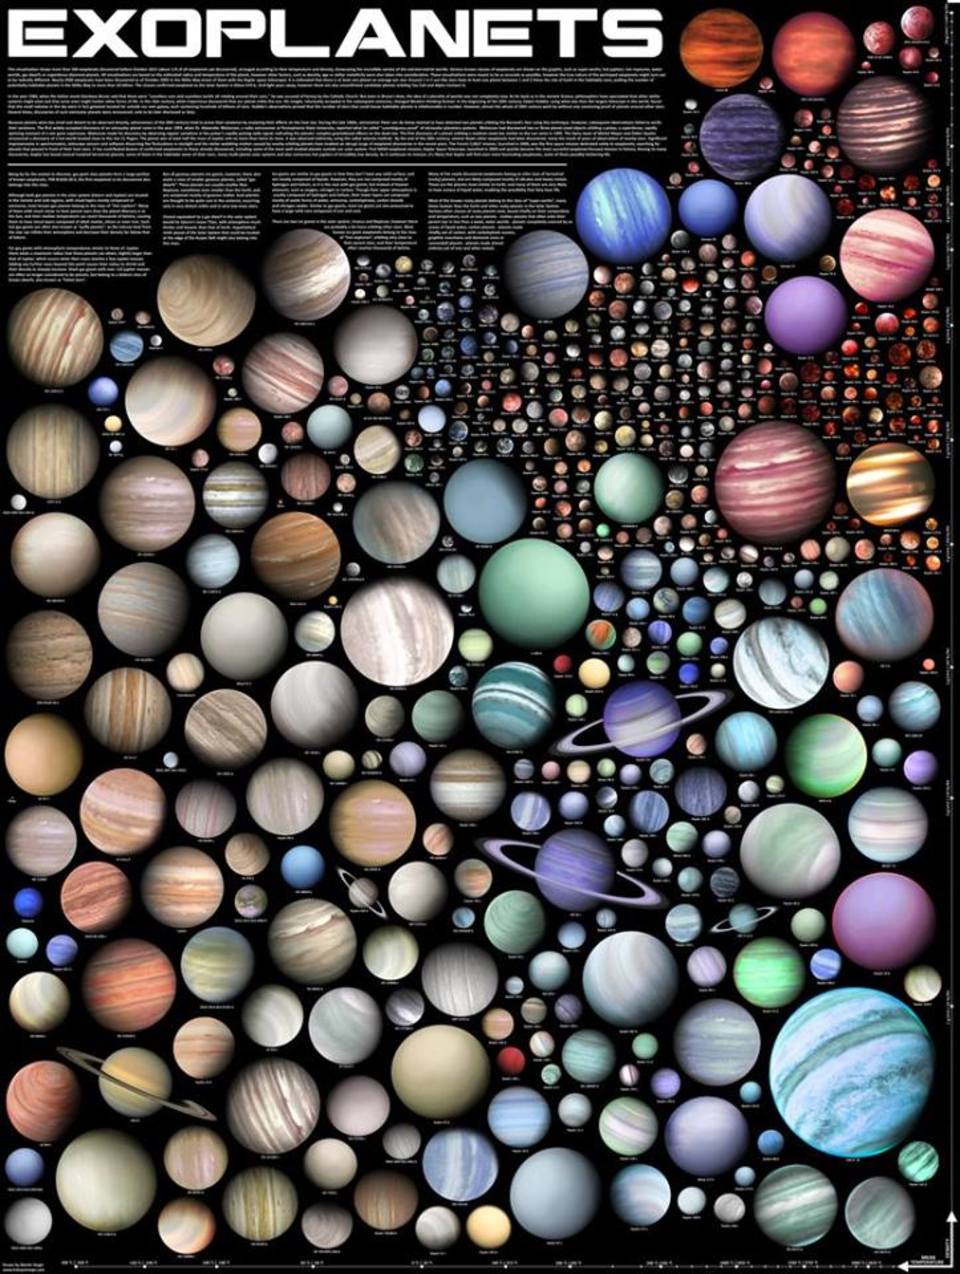 La imagen corresponde a múltiples formatos y colores simulados de planetas.